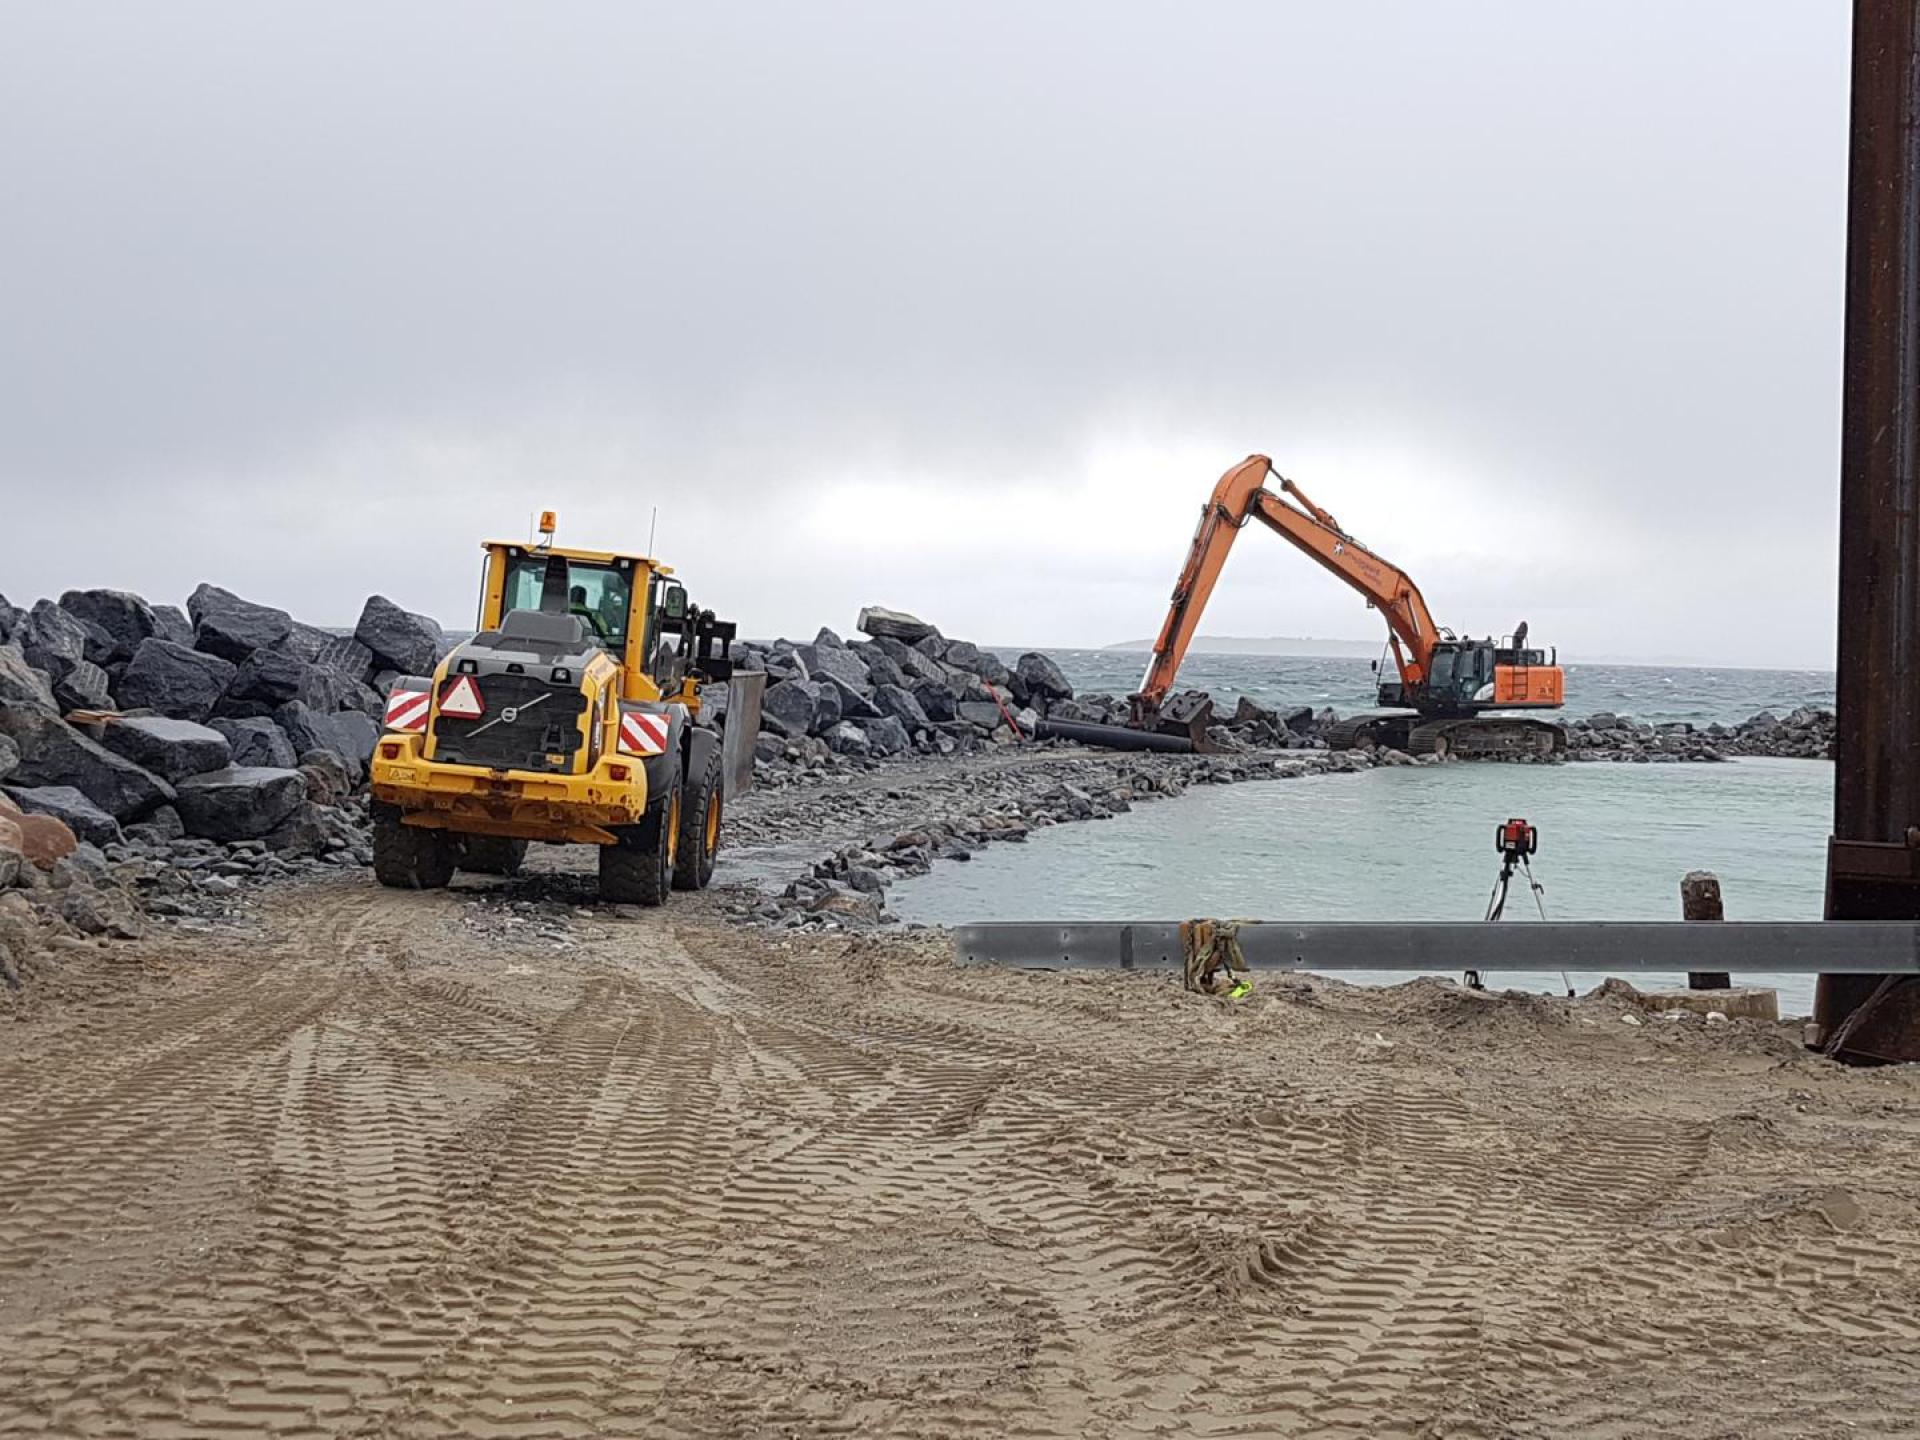 Teamet har ud over to store gravemaskiner og en stor ged og dumper også en del andet tungt grej med til Samsø. Foto: Torben Jastram.